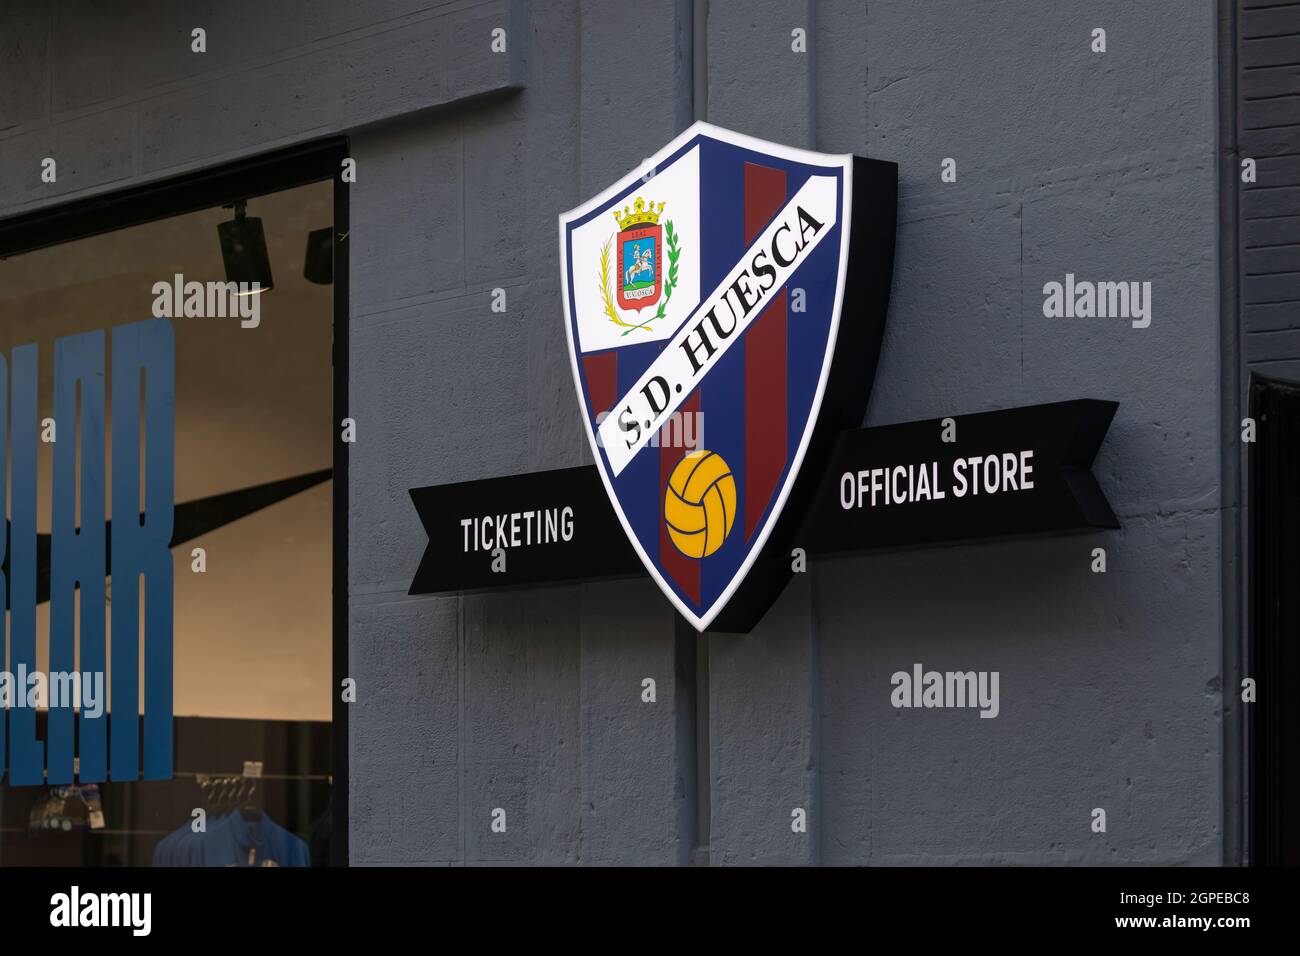 Huesca, España - 20 de julio de 2021: Detalle del escudo y emblema del  equipo de fútbol S.D. Huesca, en su tienda oficial y venta de entradas, en  la calle Coso Bajo